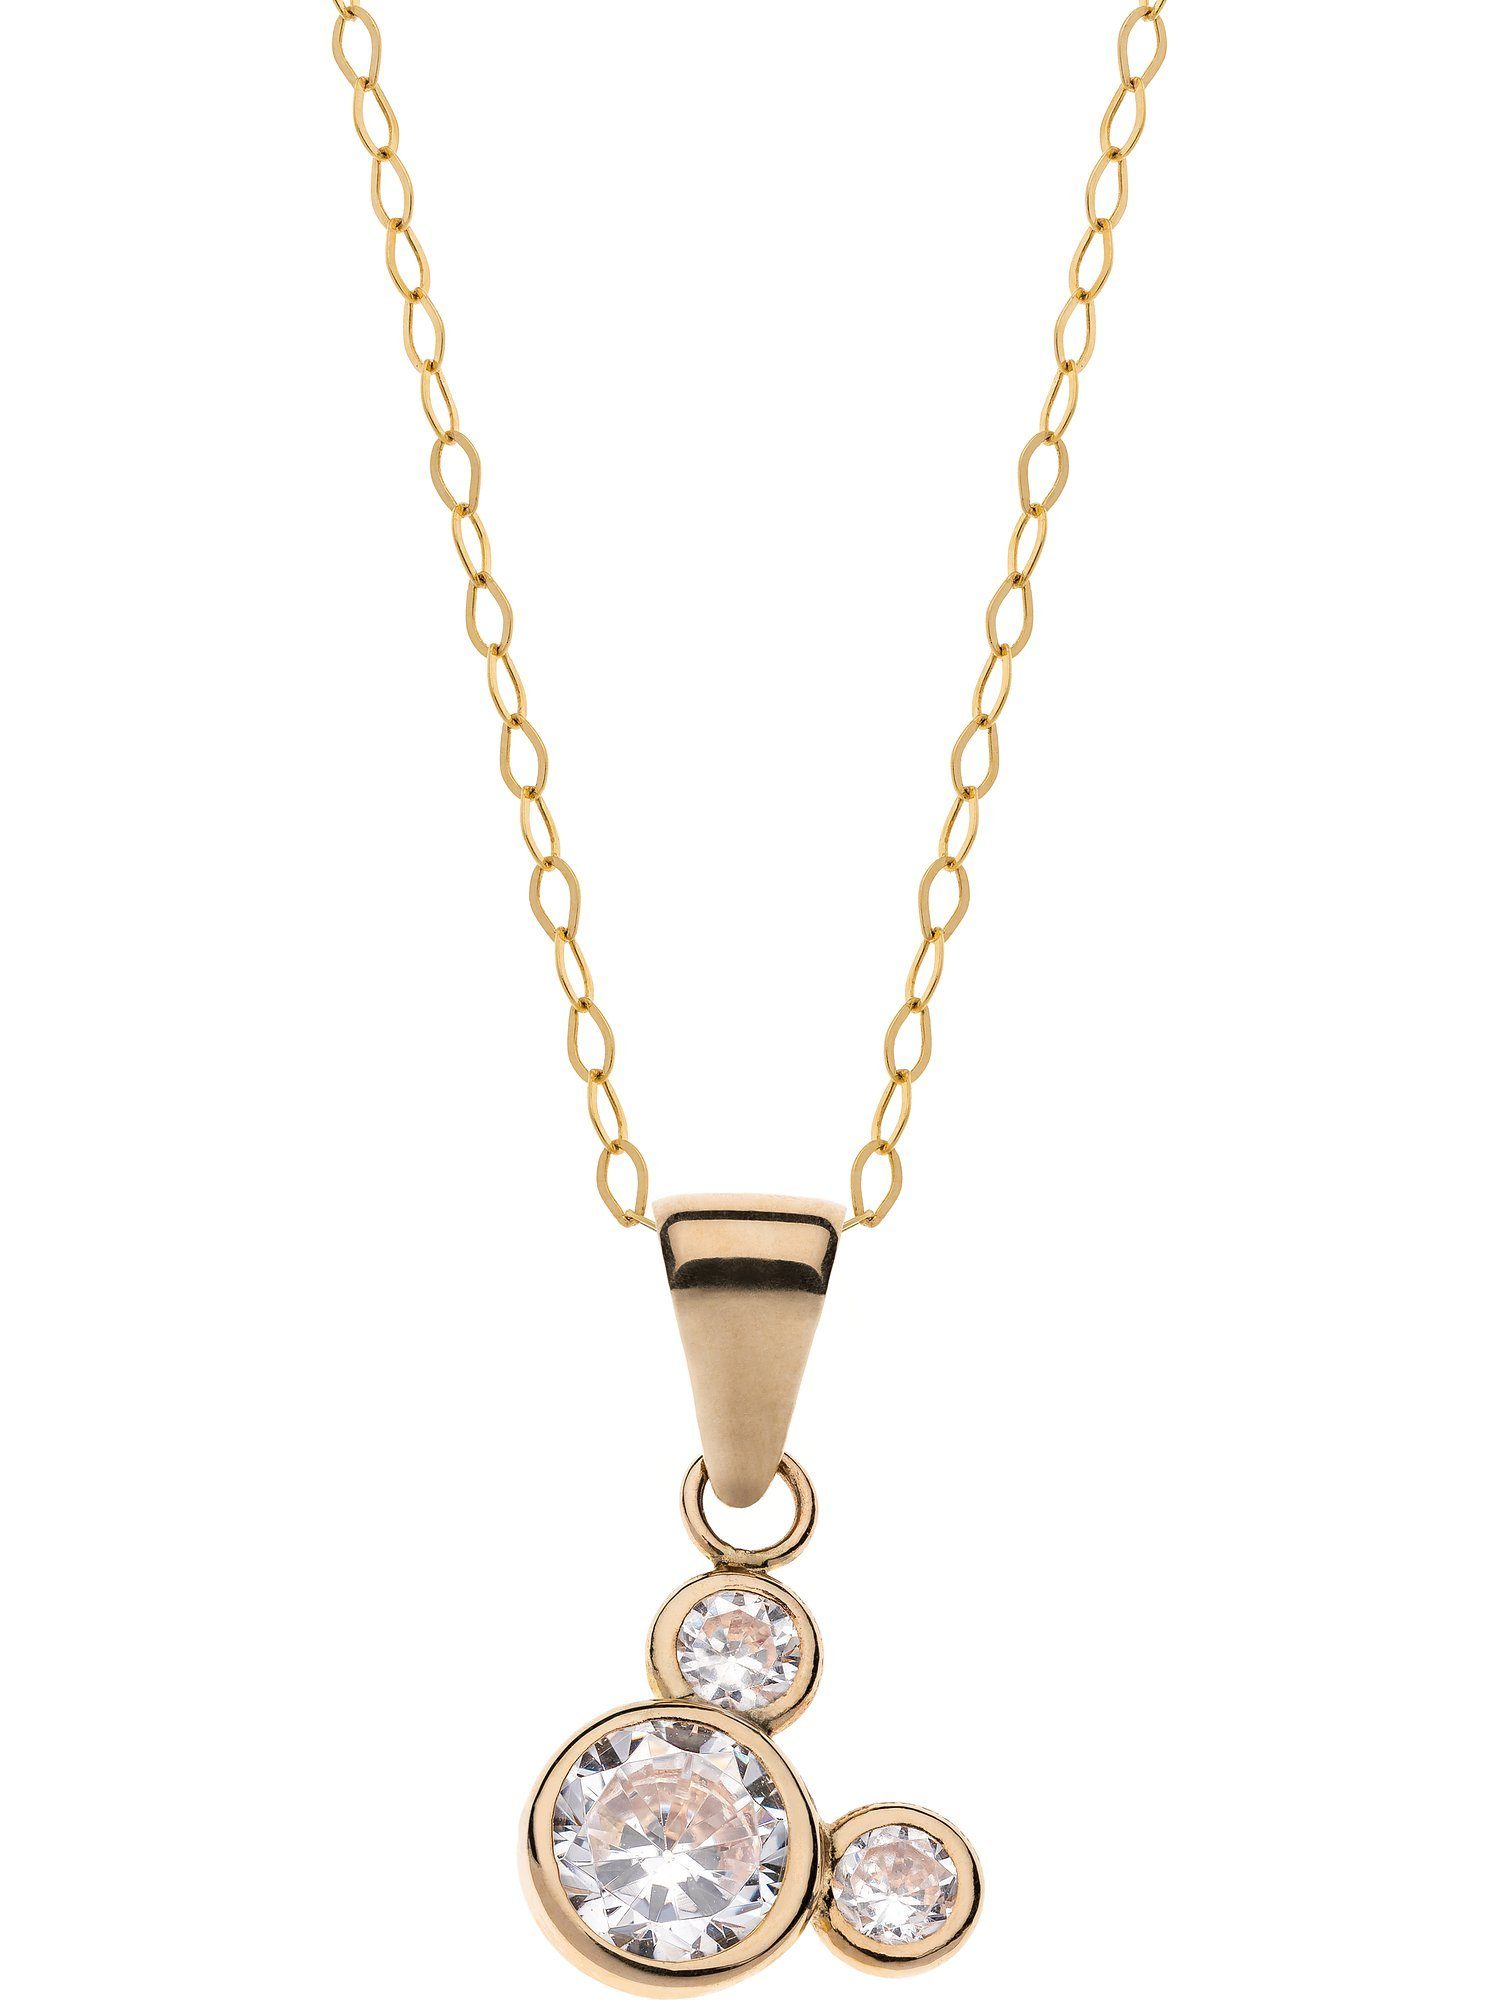 DISNEY Jewelry Collier Disney Damen-Kette 375er Gelbgold 3 Kristall